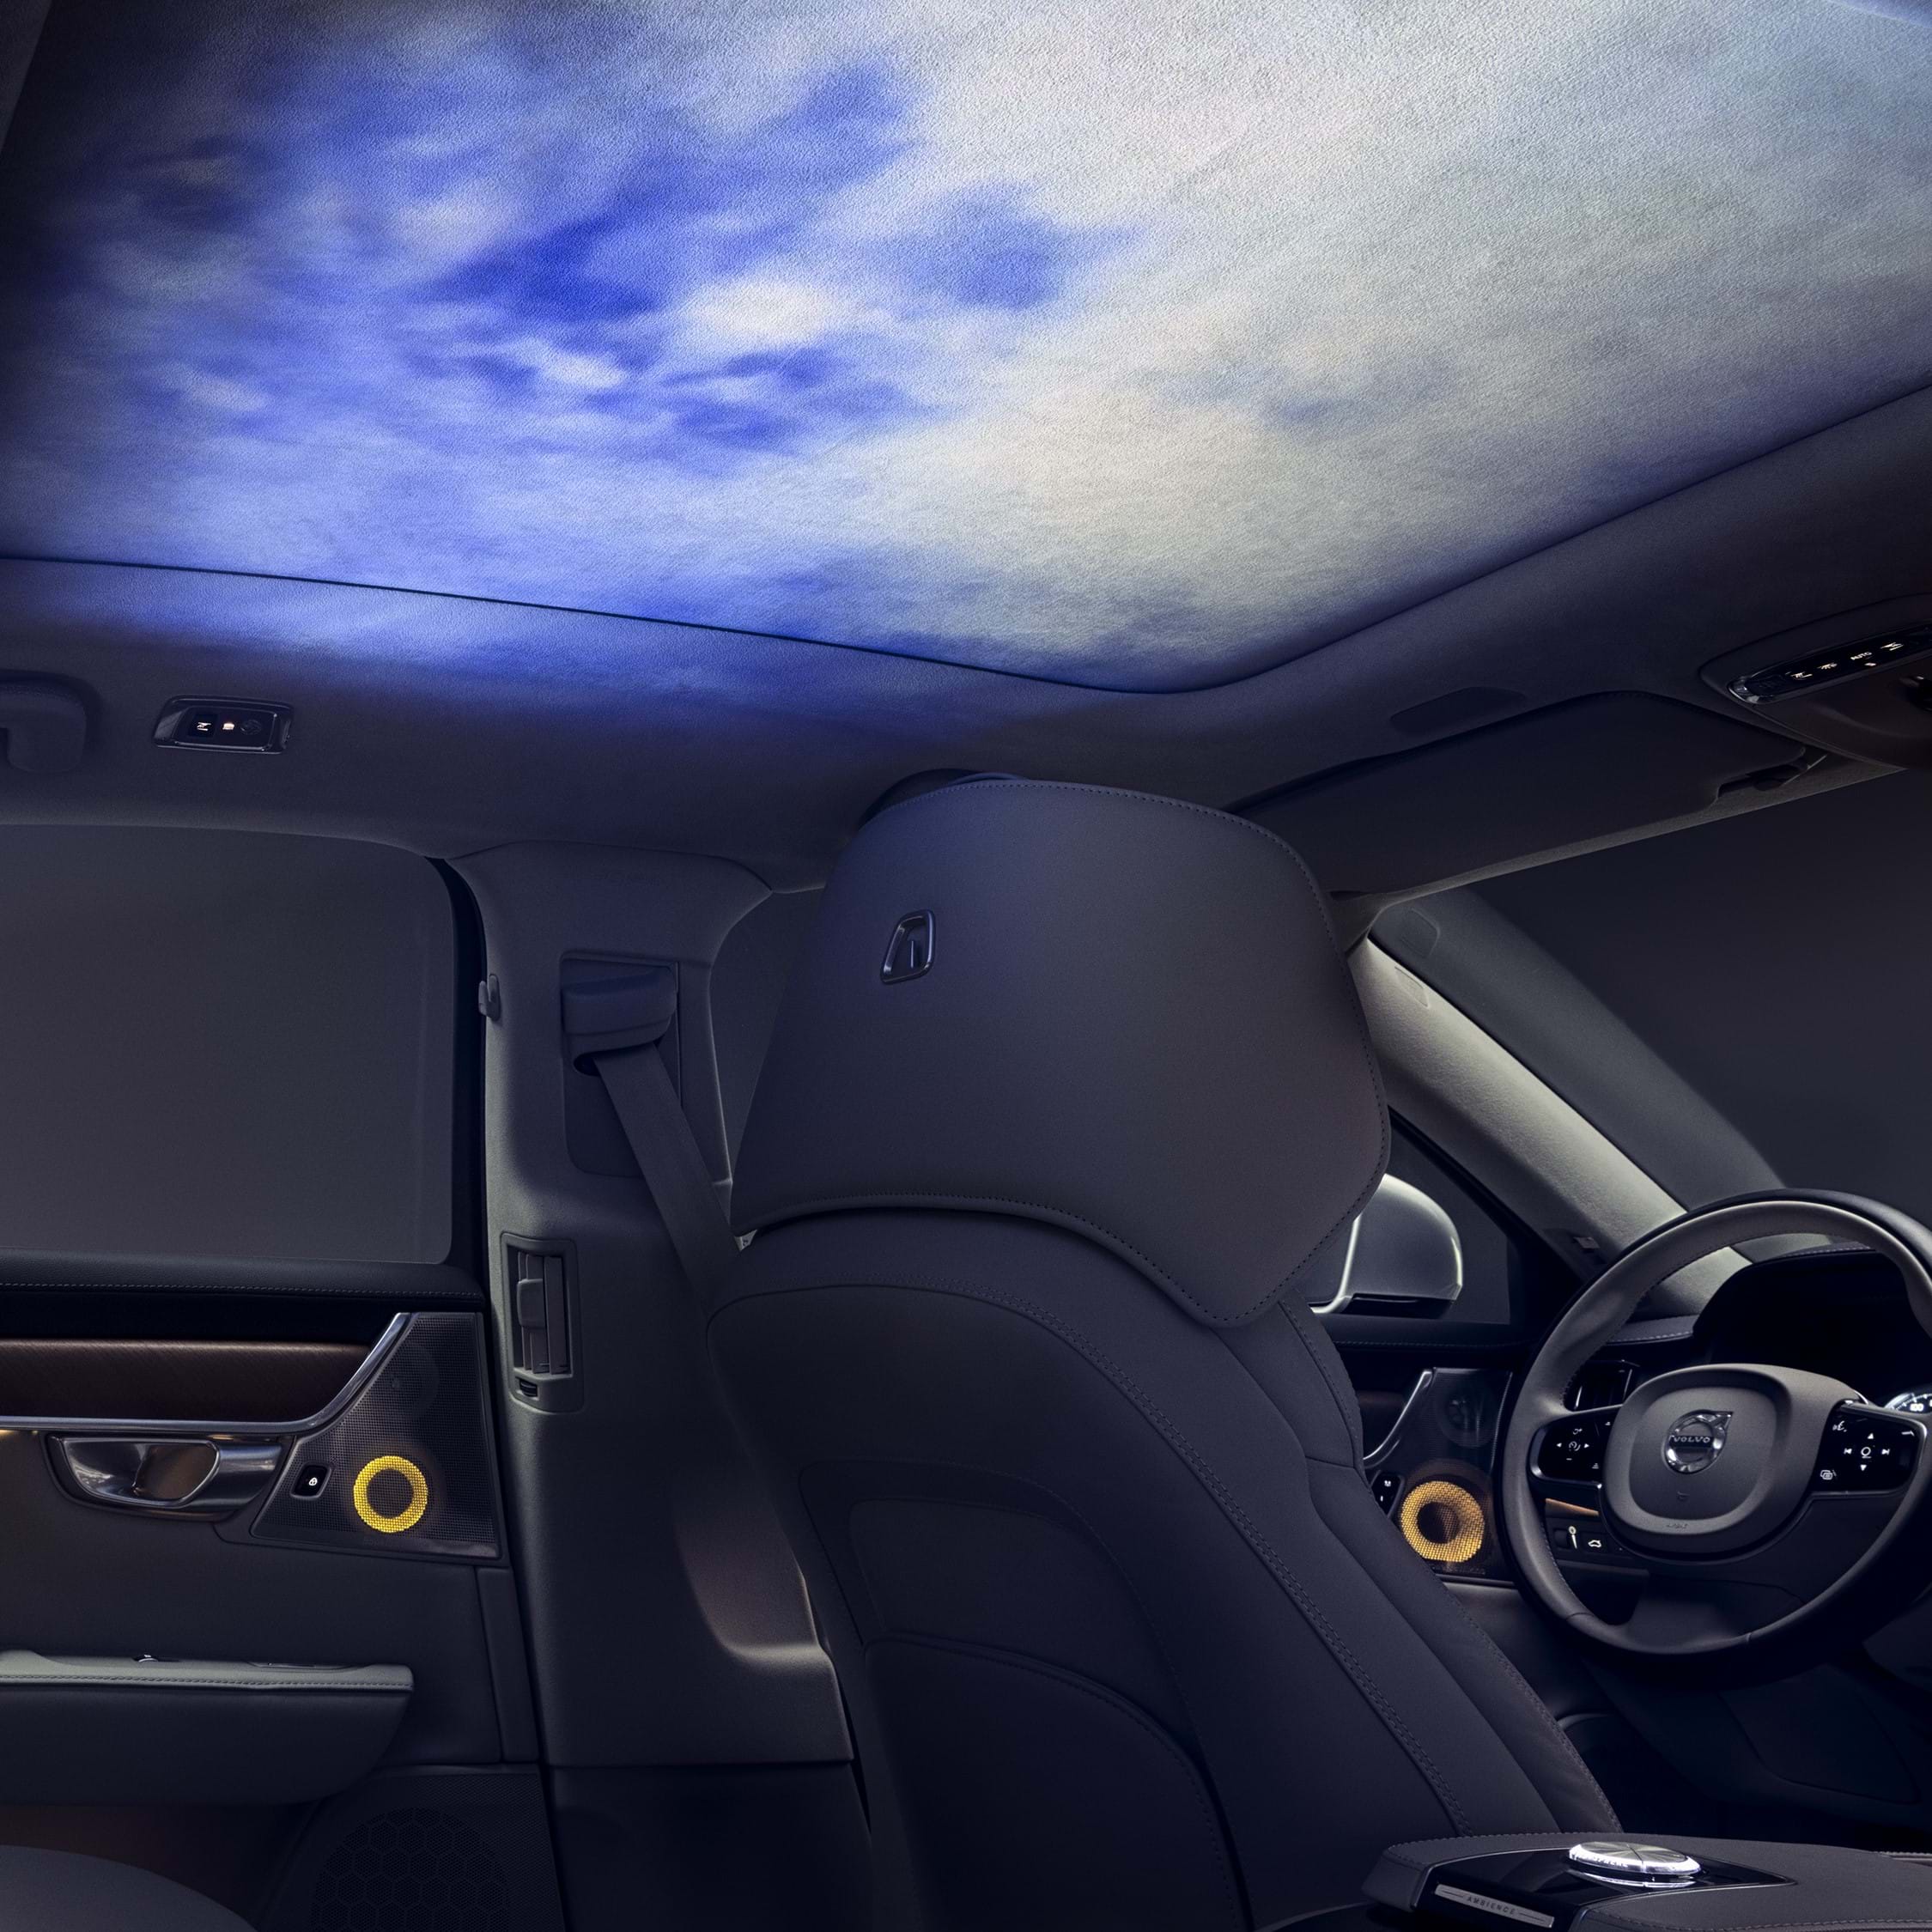 Innenraum eines Volvo mit in den Dachhimmel projizierter Ambience-Beleuchtung